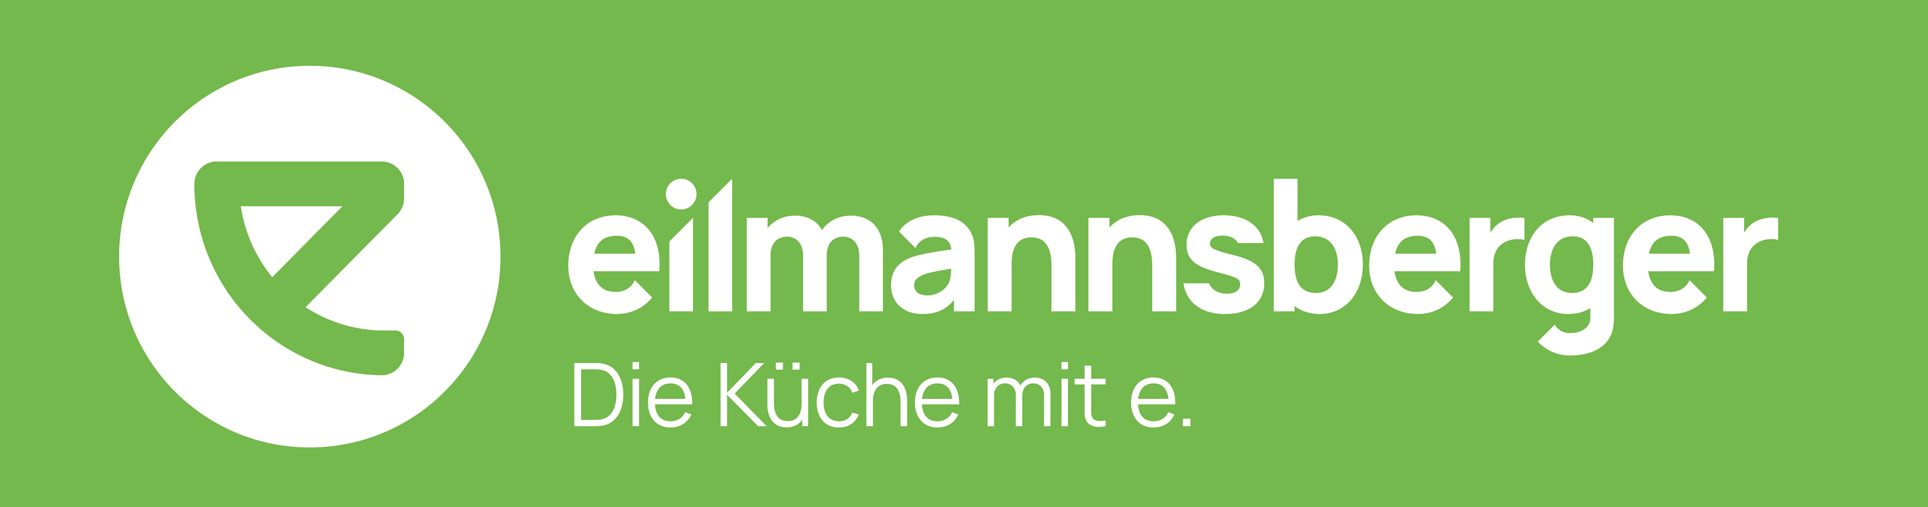 Eilmannsberger GmbH